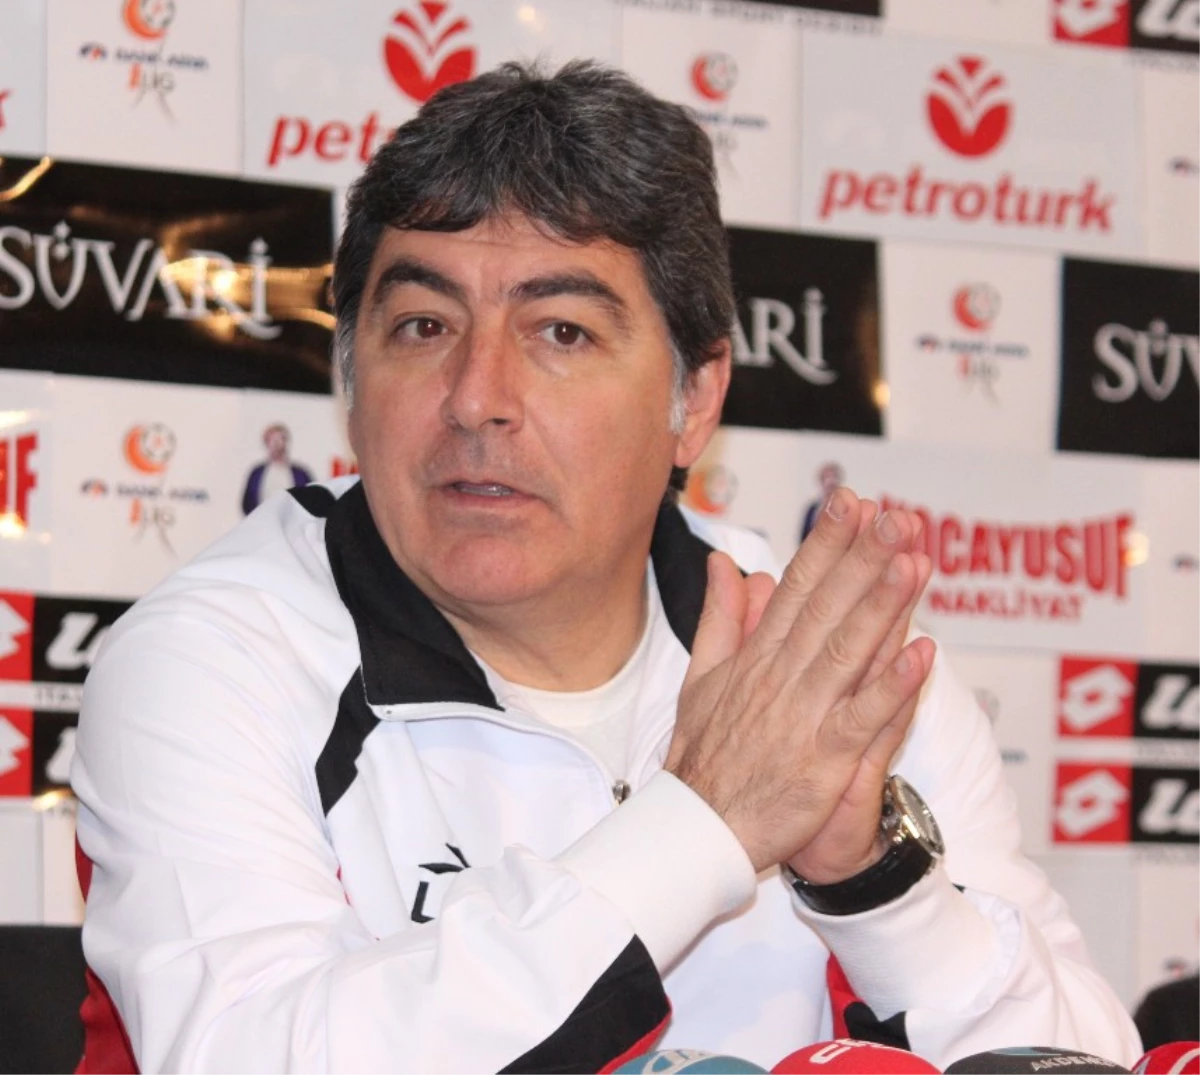 Adanaspor Teknik Direktörü Eriş Açıklaması